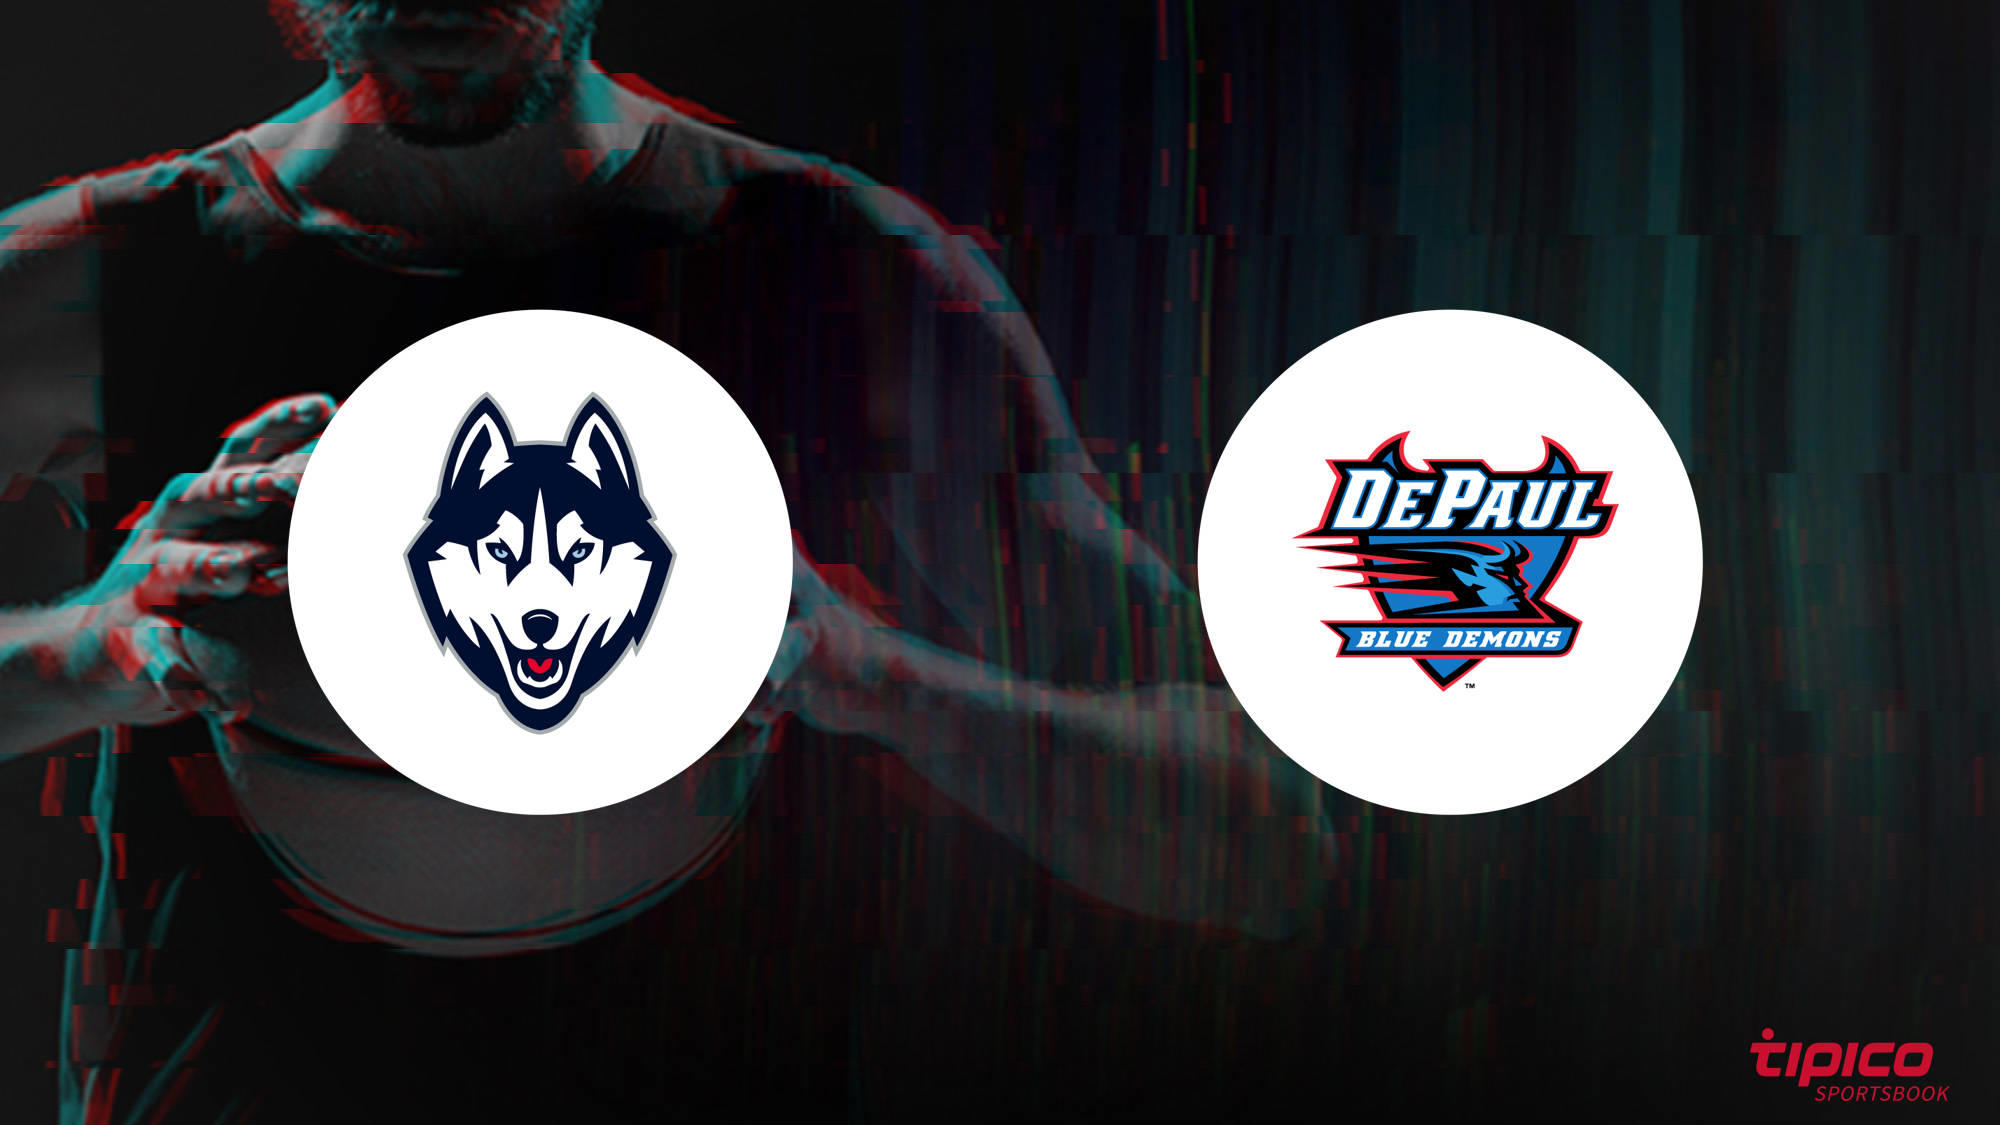 UConn Huskies vs. DePaul Blue Demons Preview